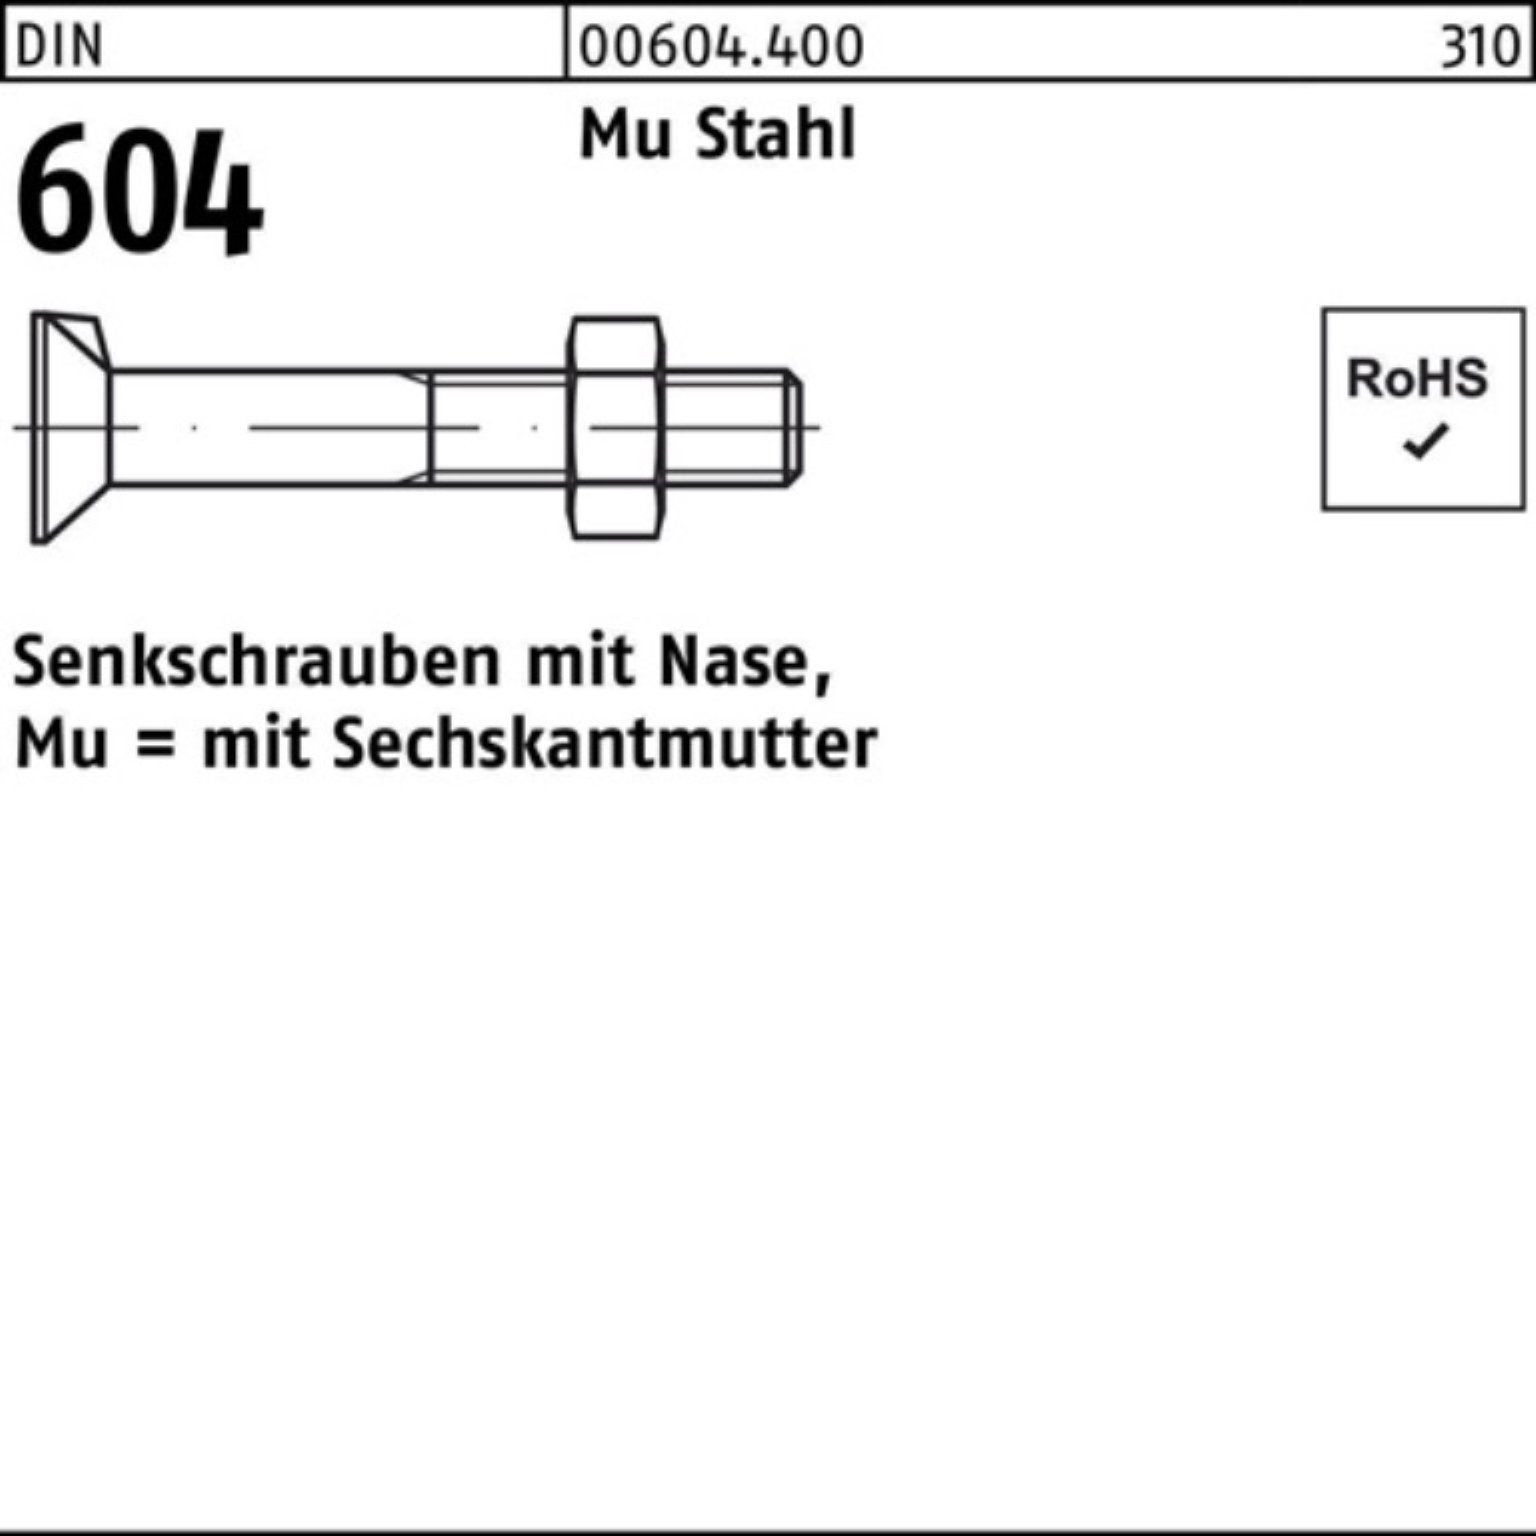 Reyher Senkschraube 100er Pack Senkschraube DIN 604 Nase/6-ktmutter M10x 100 Mu Stahl 4.6